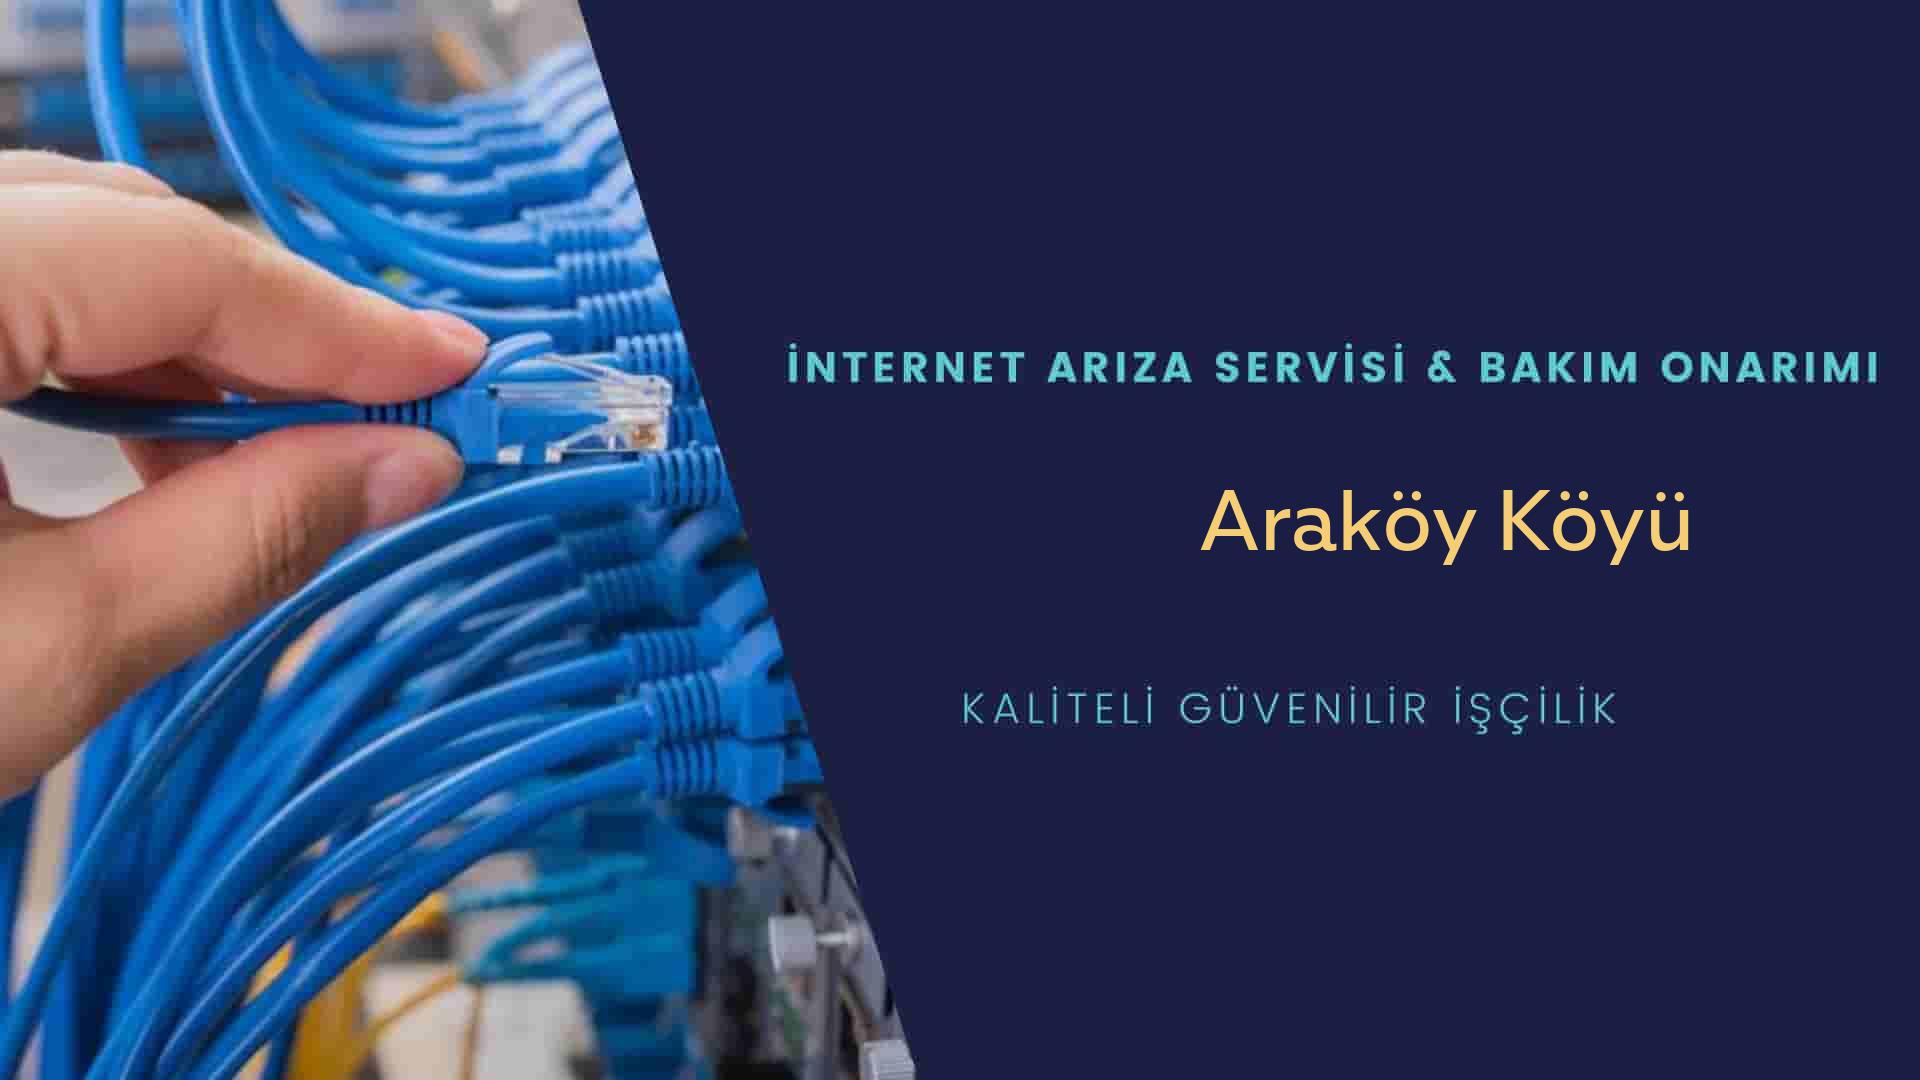 Araköy Köyü internet kablosu çekimi yapan yerler veya elektrikçiler mi? arıyorsunuz doğru yerdesiniz o zaman sizlere 7/24 yardımcı olacak profesyonel ustalarımız bir telefon kadar yakındır size.